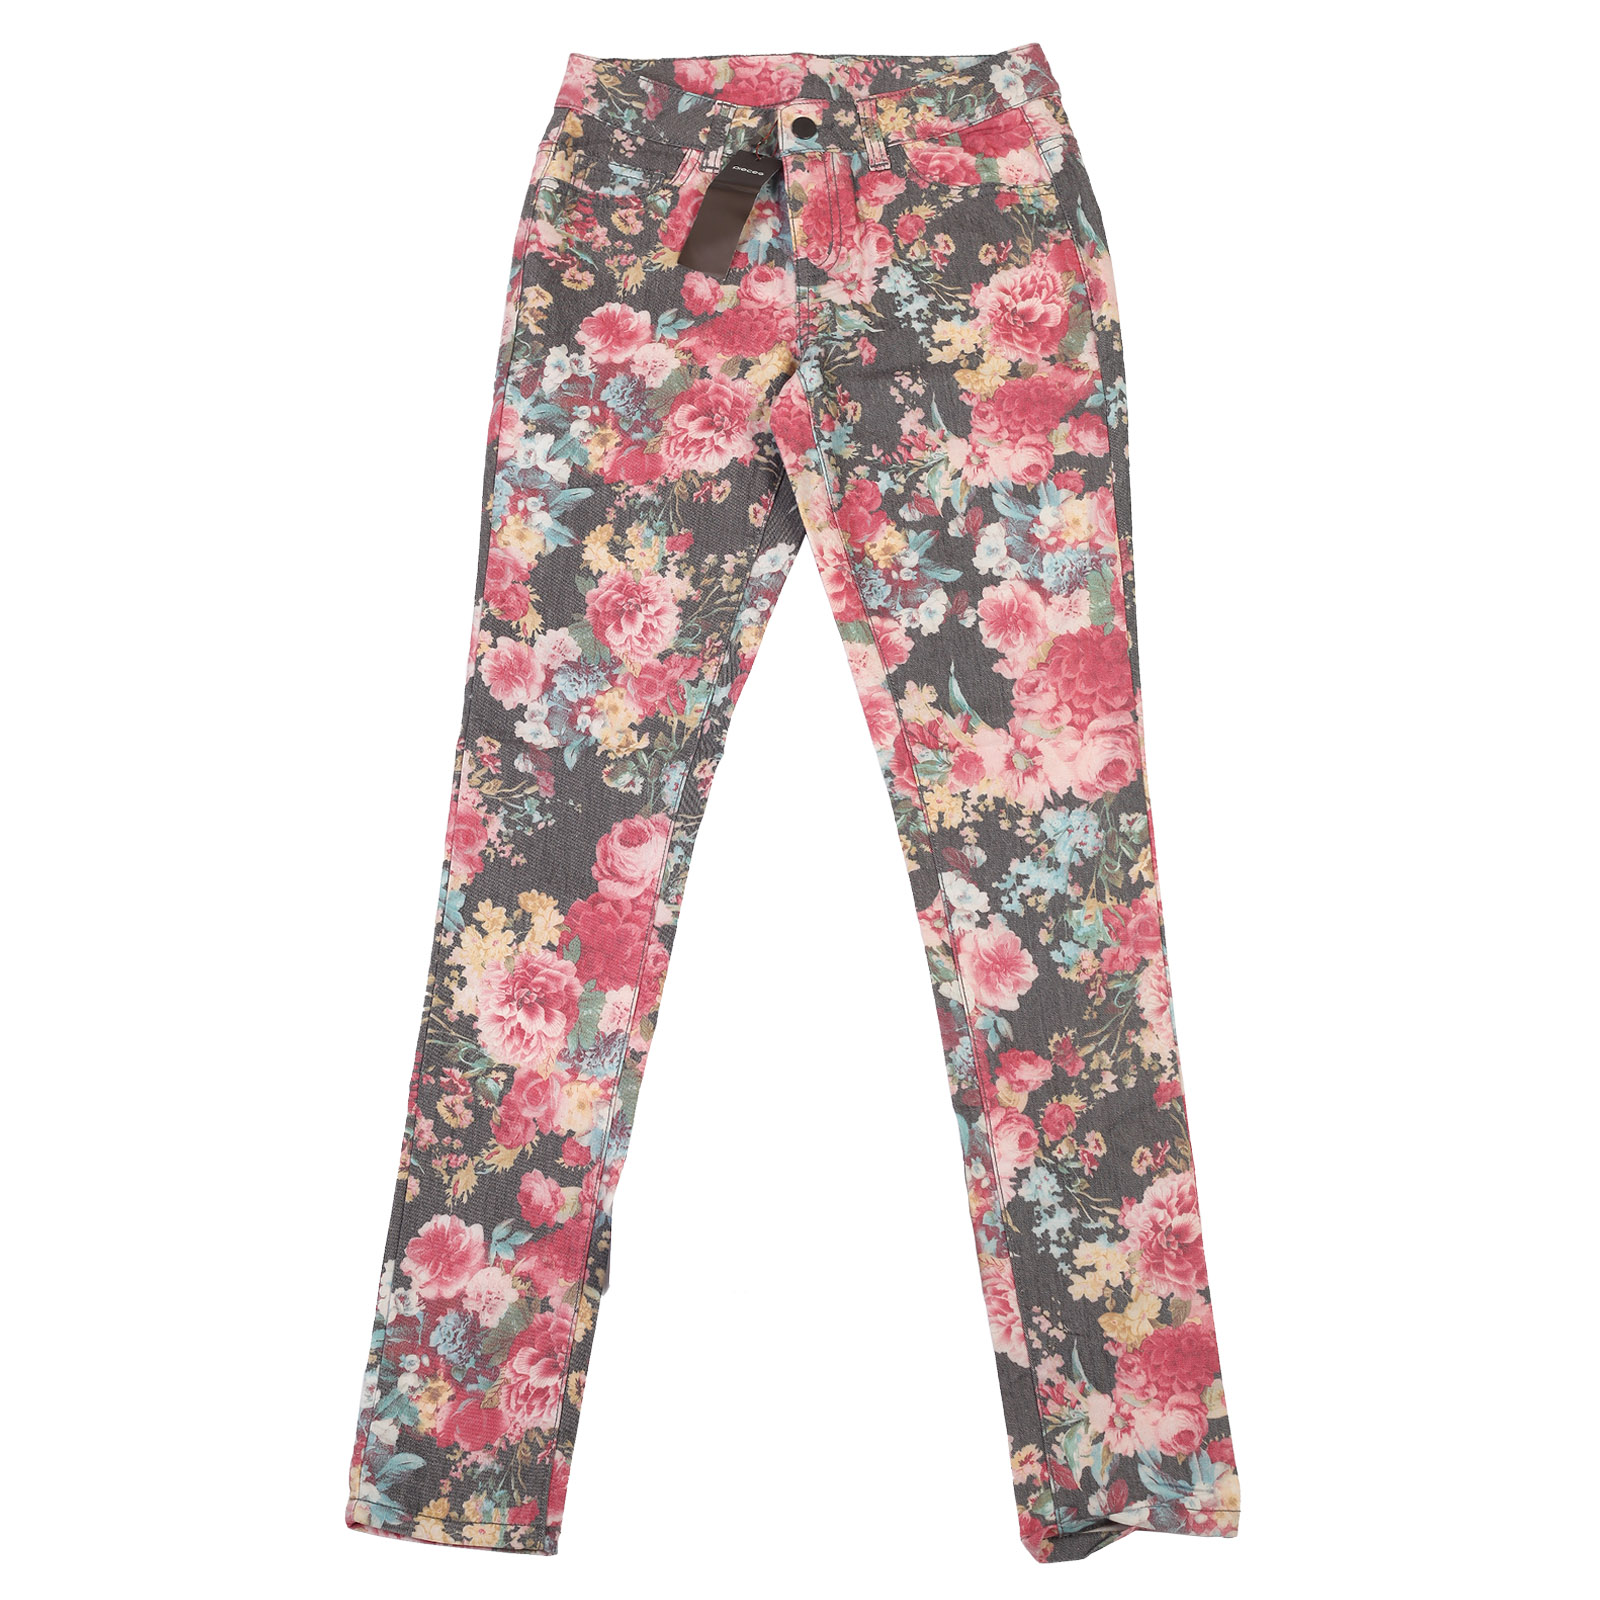 Купить на лето женские брюки в цветочек от ТМ Pieces